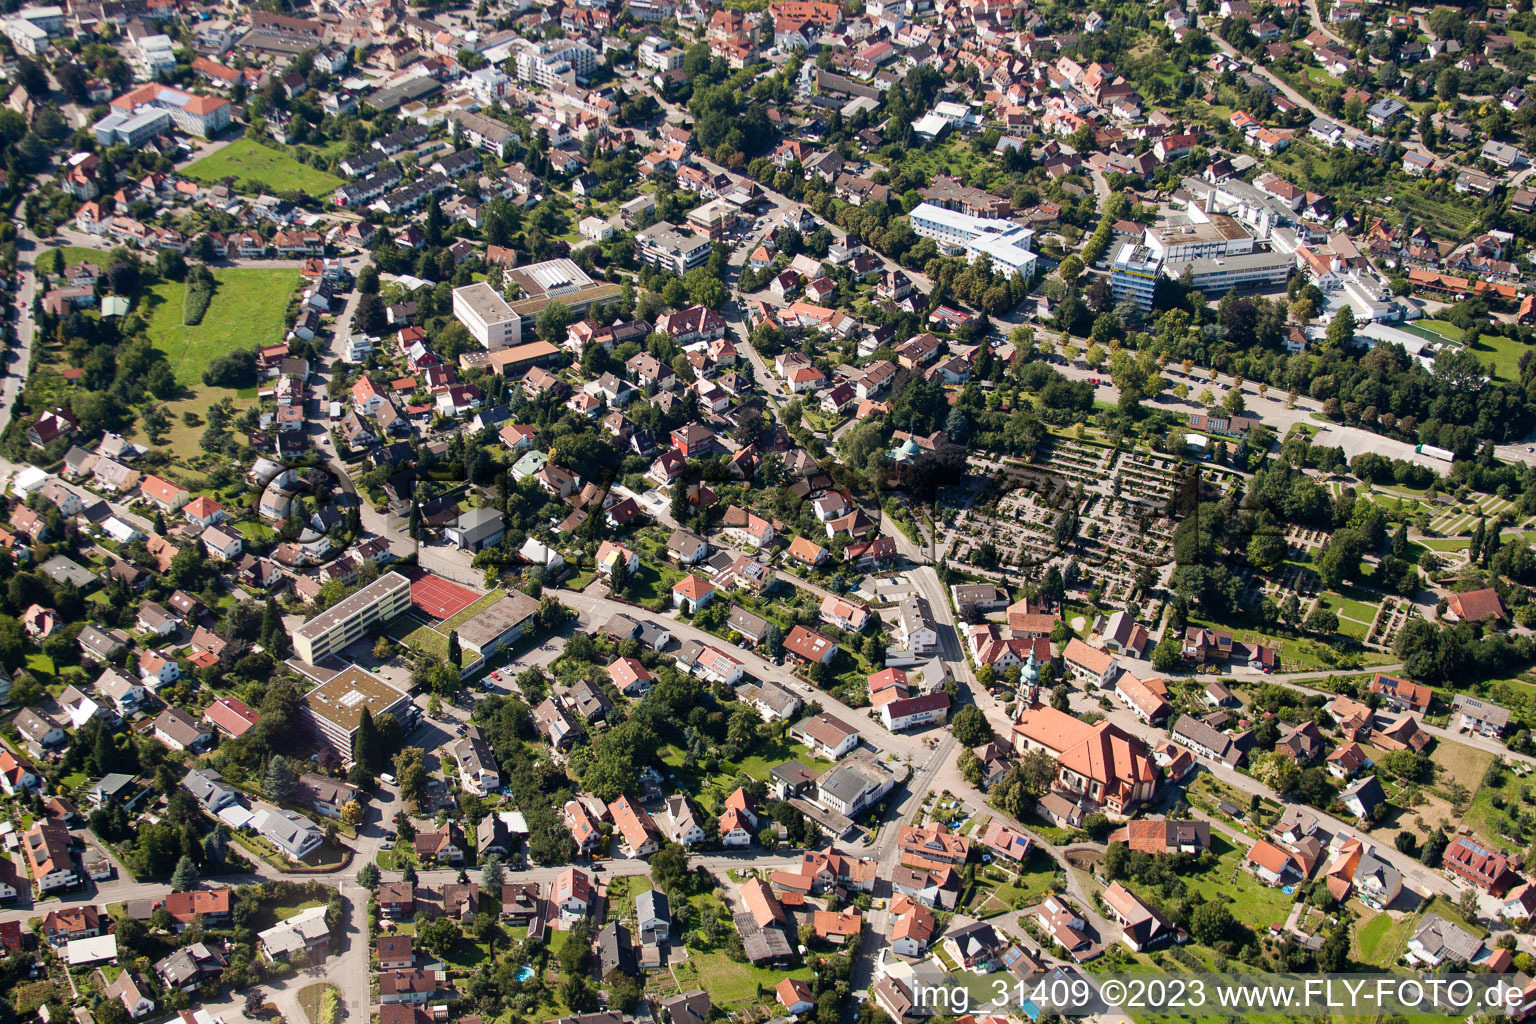 Luftbild von Ortsteil Kappelwindeck in Bühl im Bundesland Baden-Württemberg, Deutschland